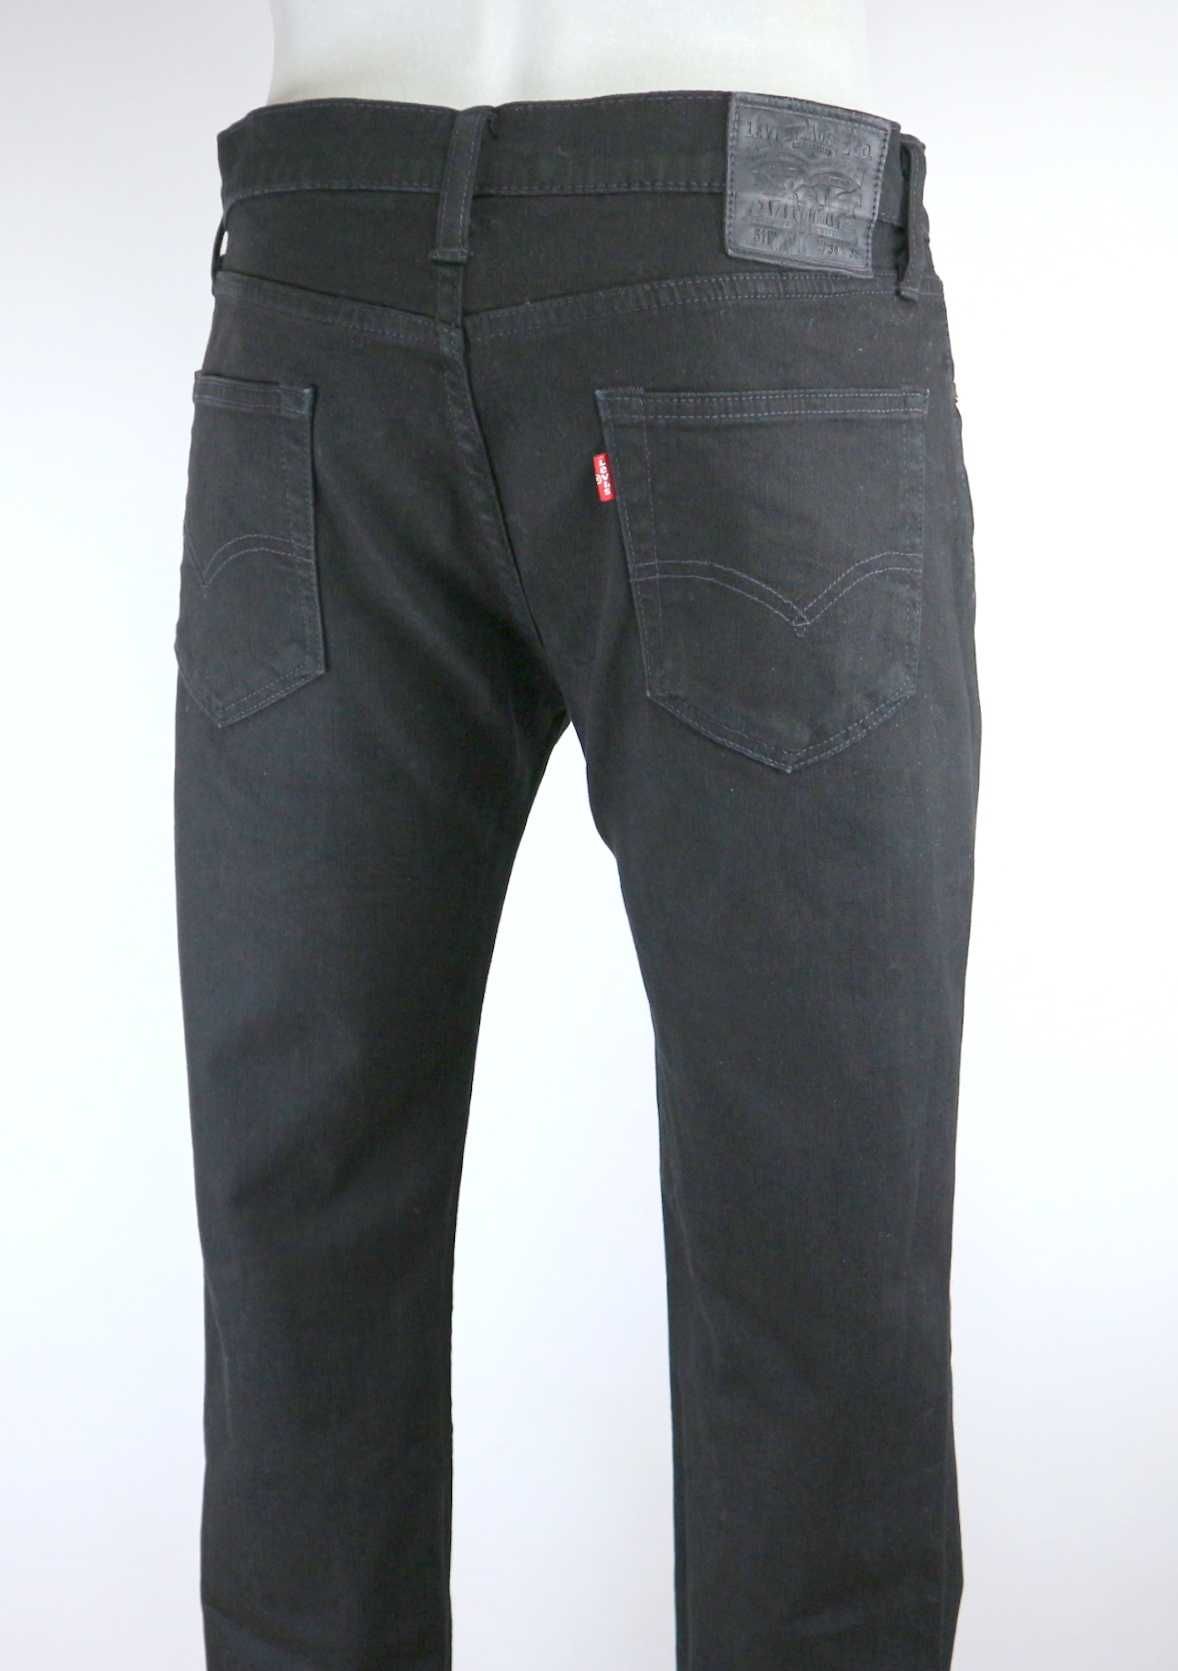 Levis 511 spodnie jeansy W34 L32 czarne pas 2 x 44/46 cm